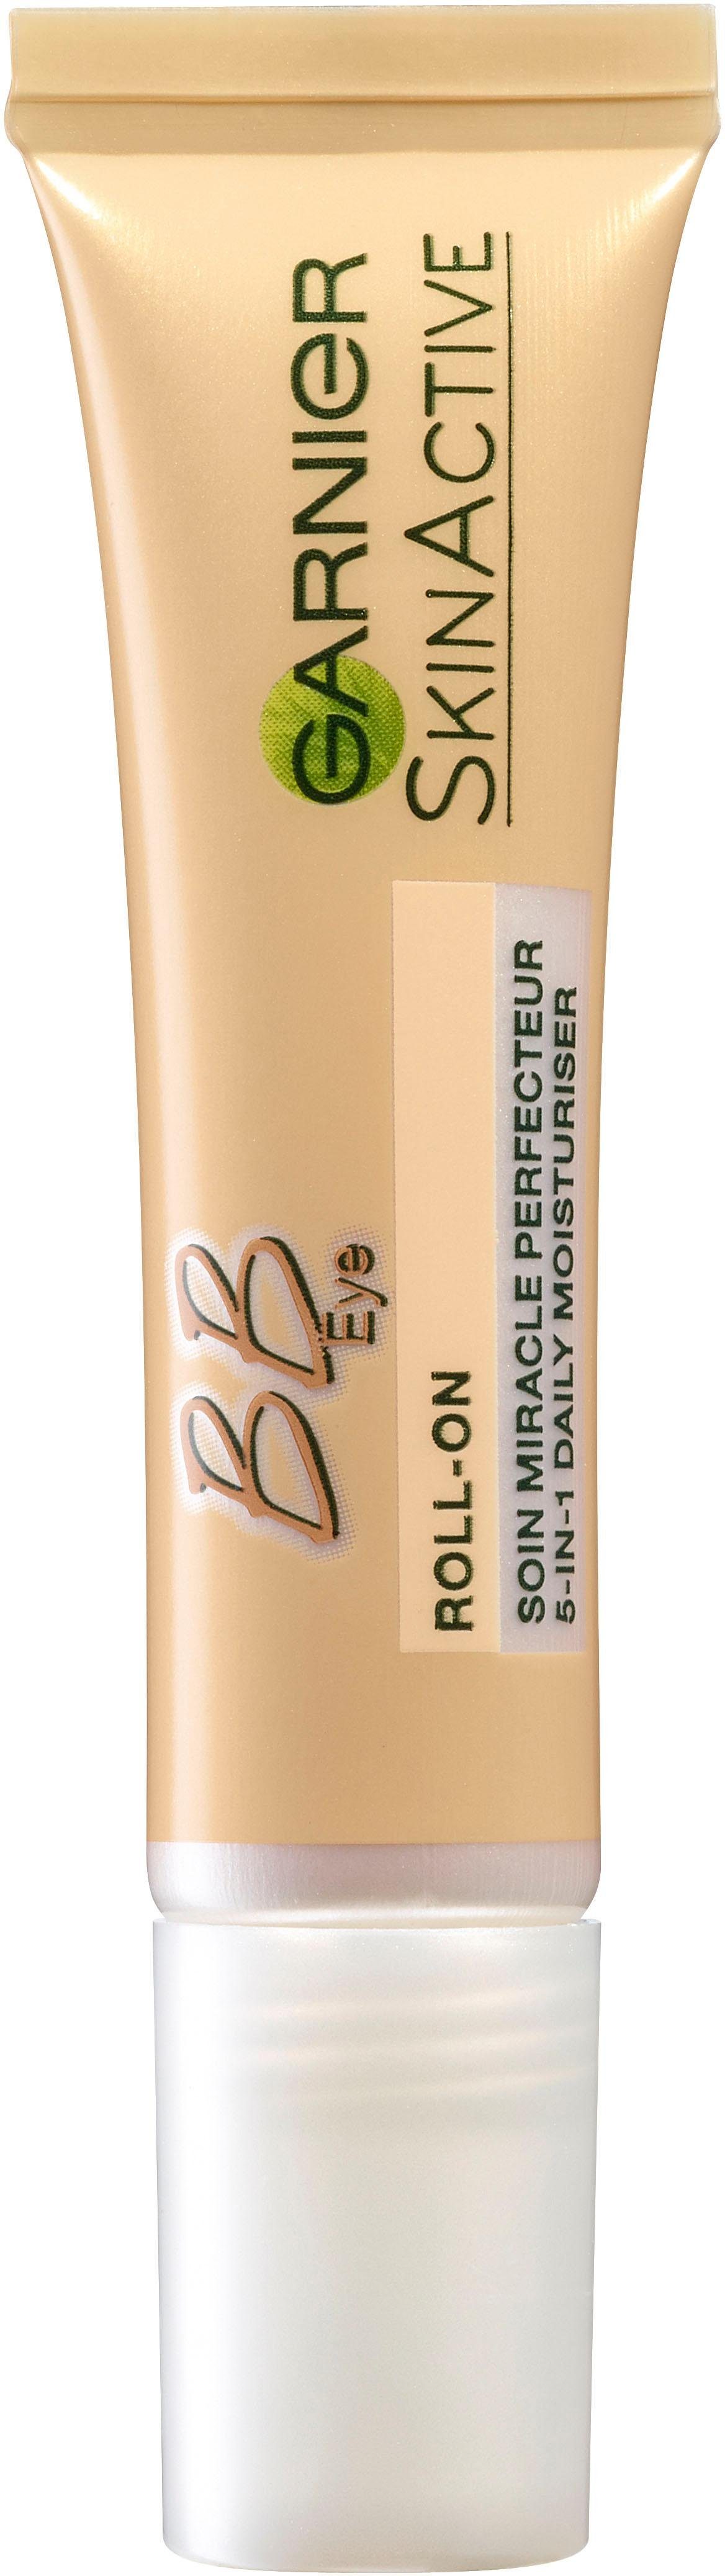 GARNIER Augen-Roll-on »Miracle Skin Perfector BB Cream« online kaufen | OTTO